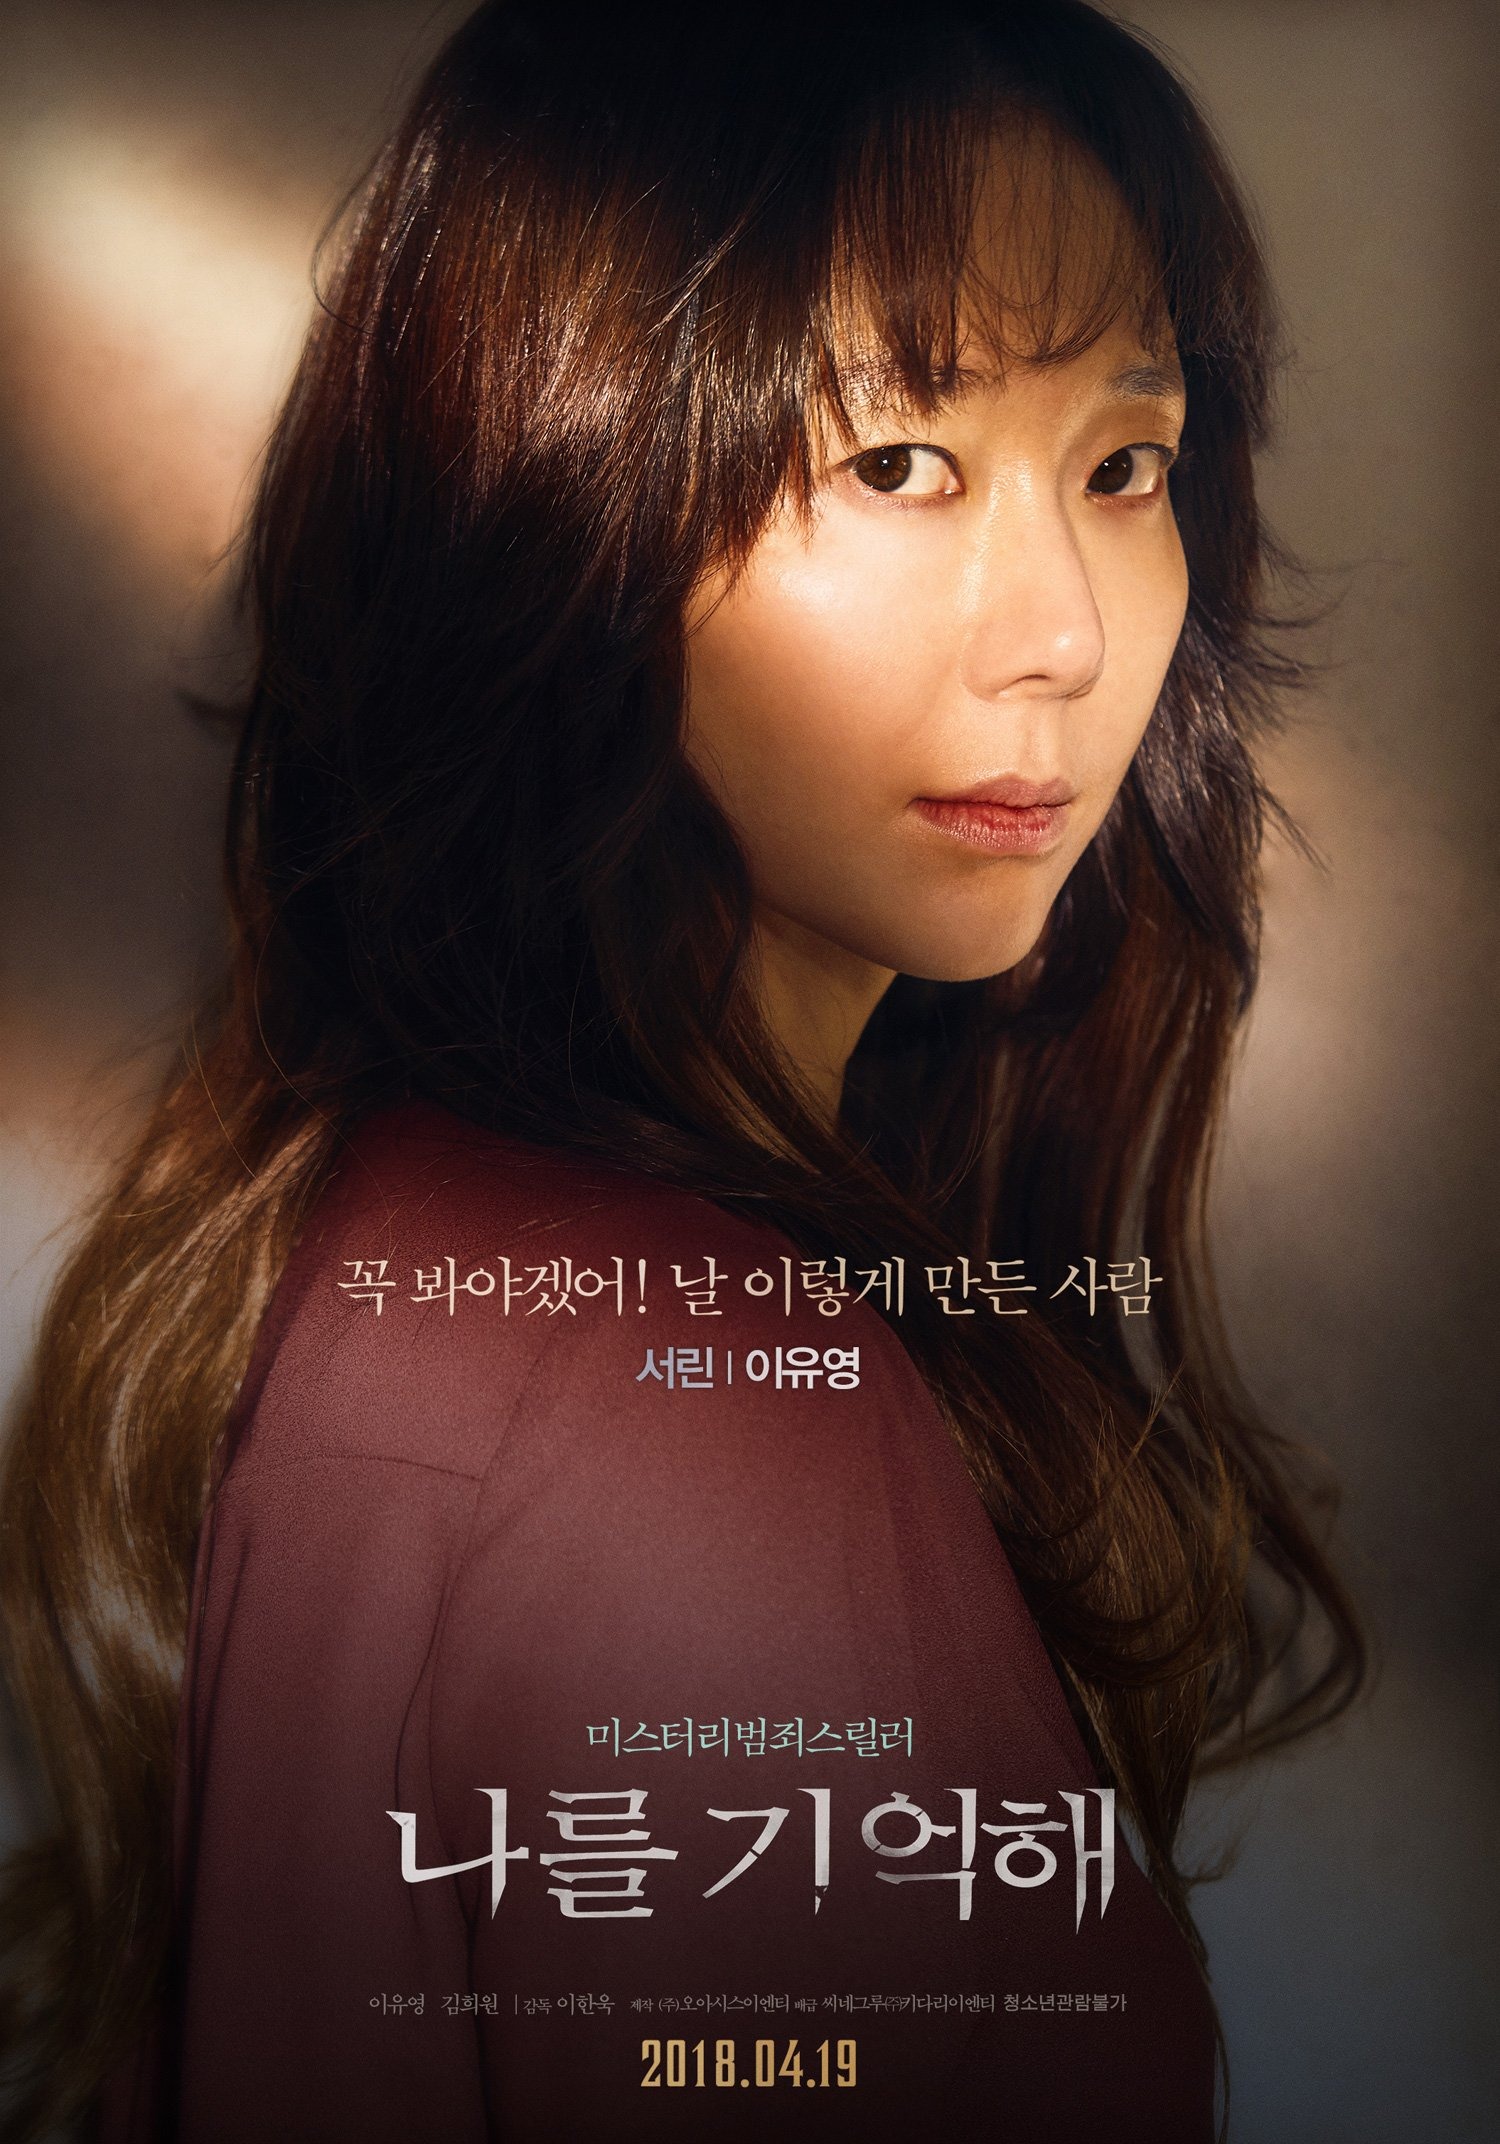 Diễn viên kỳ cựu Lee Yoo Young đảm nhận vai nữ chính Han Seo Rin